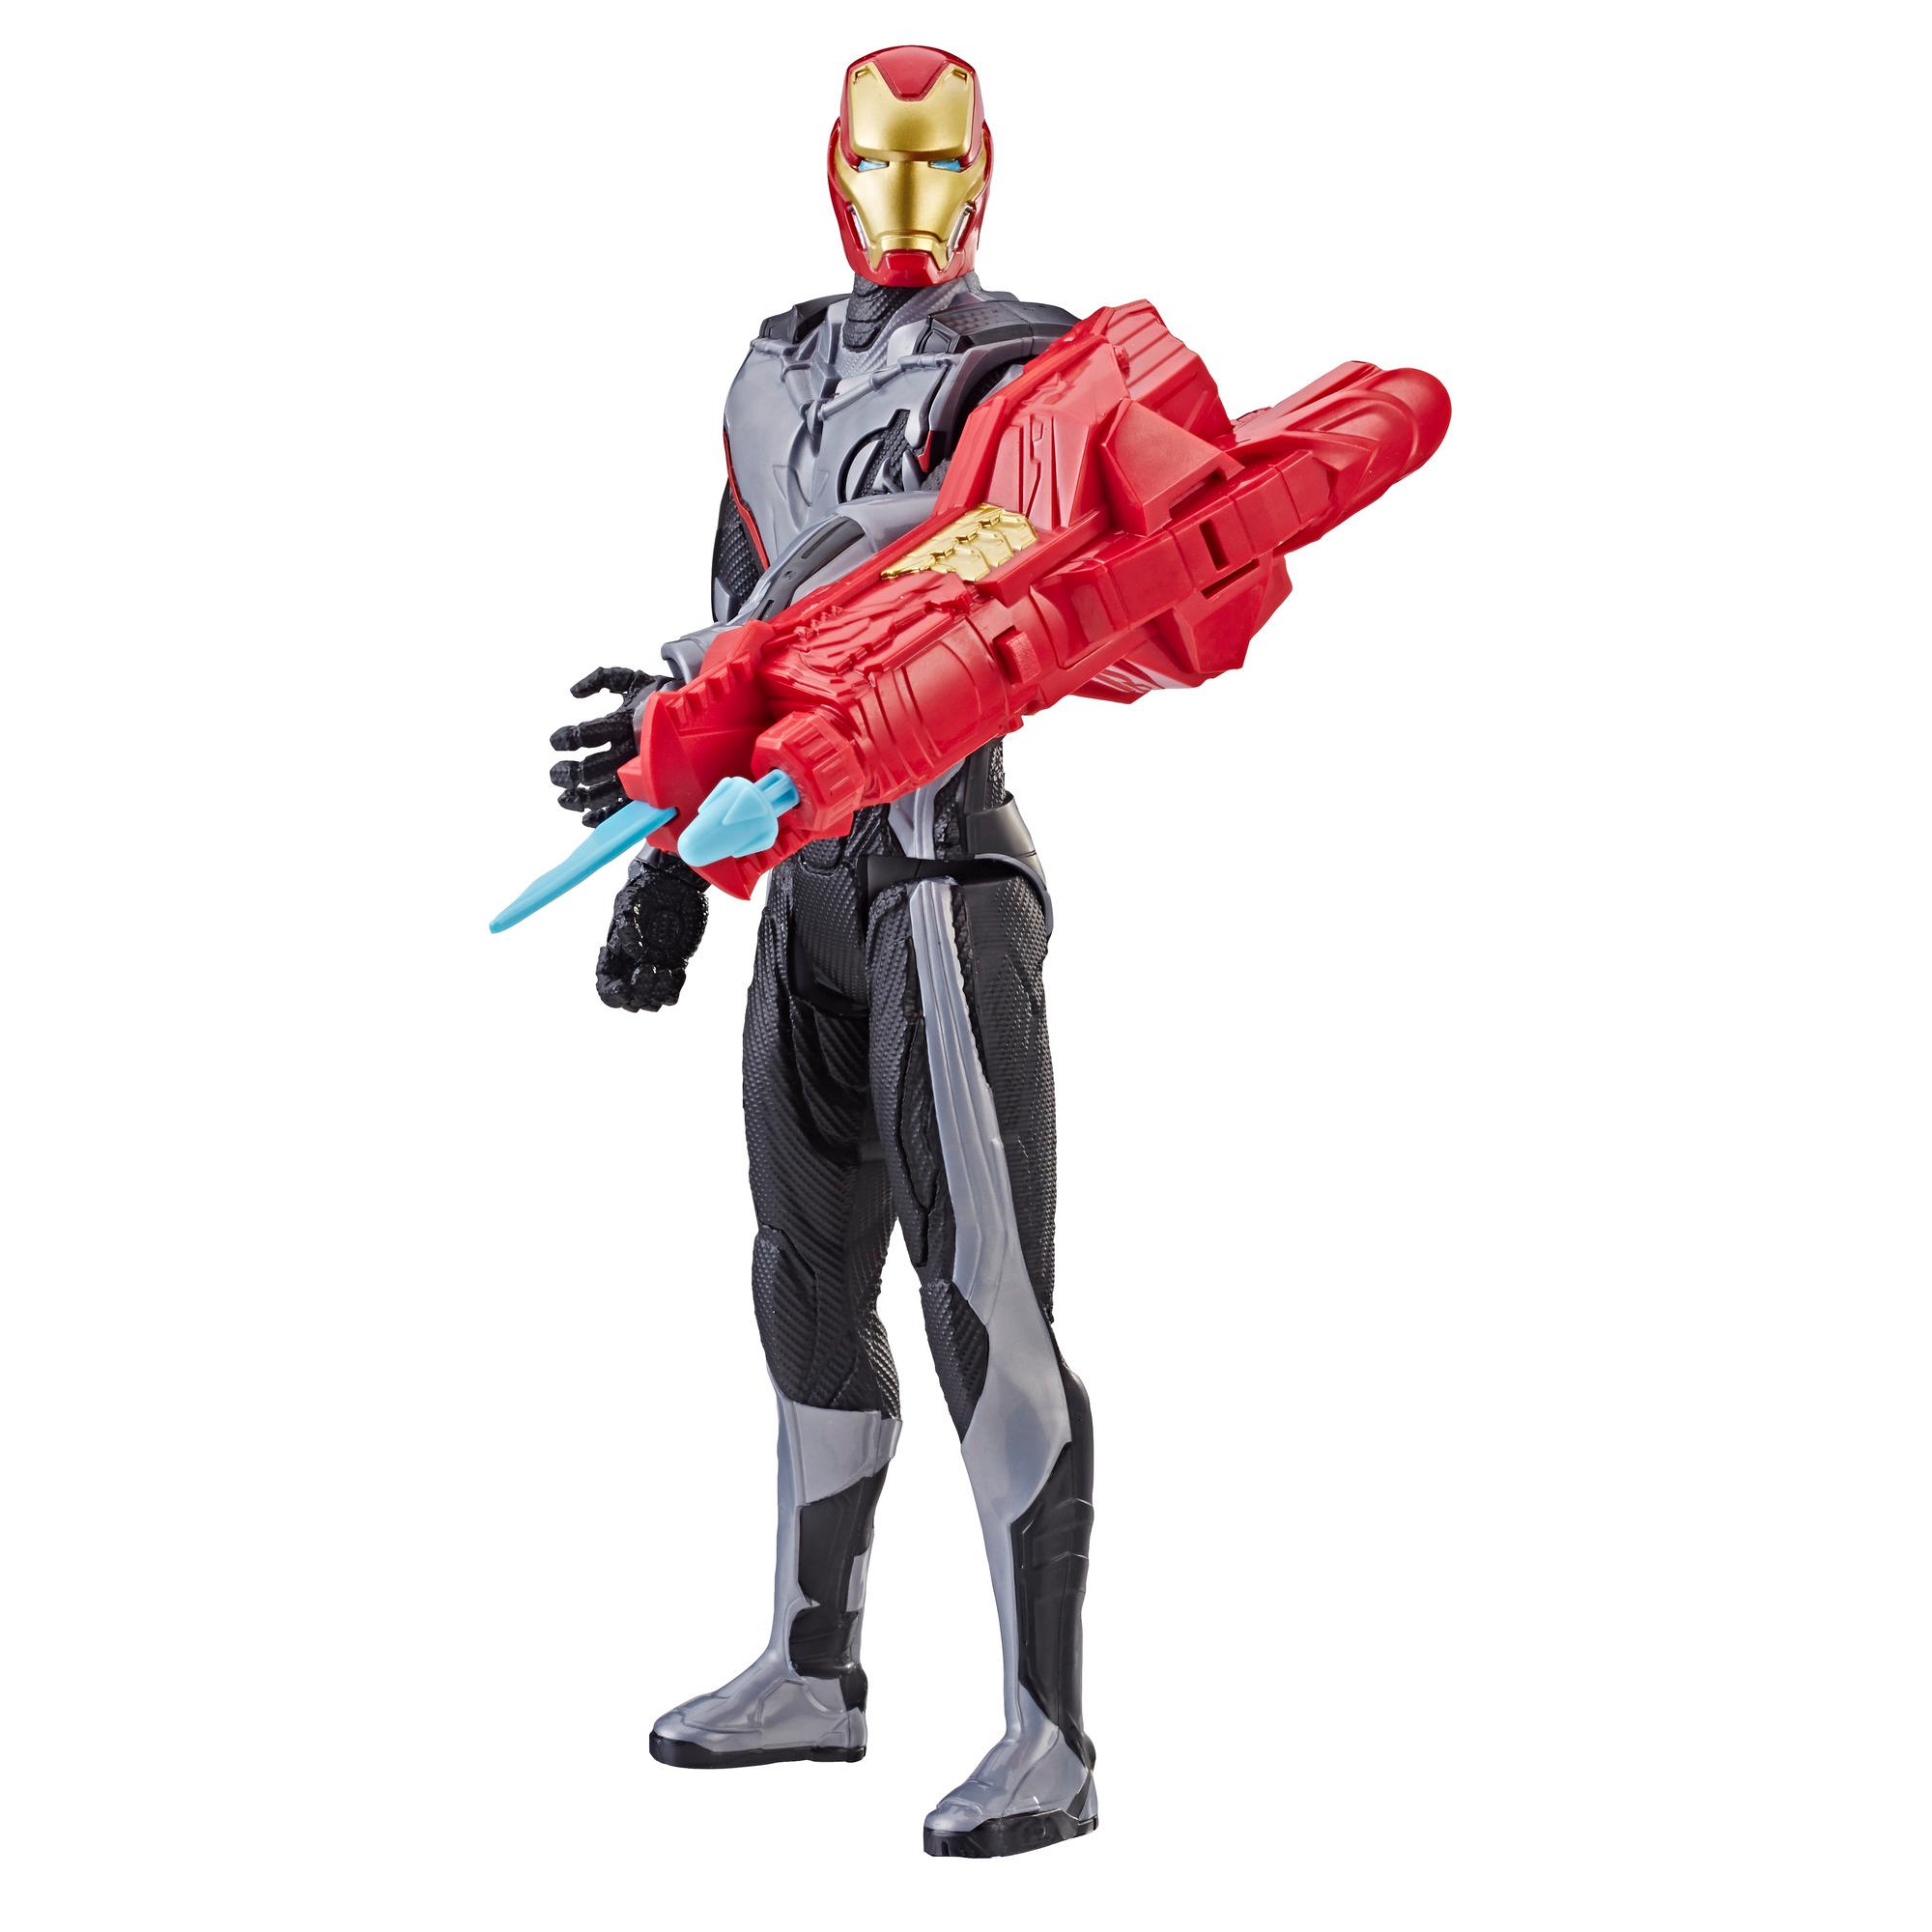 Marvel Avengers: Endgame Titan Hero Power FX Iron Man